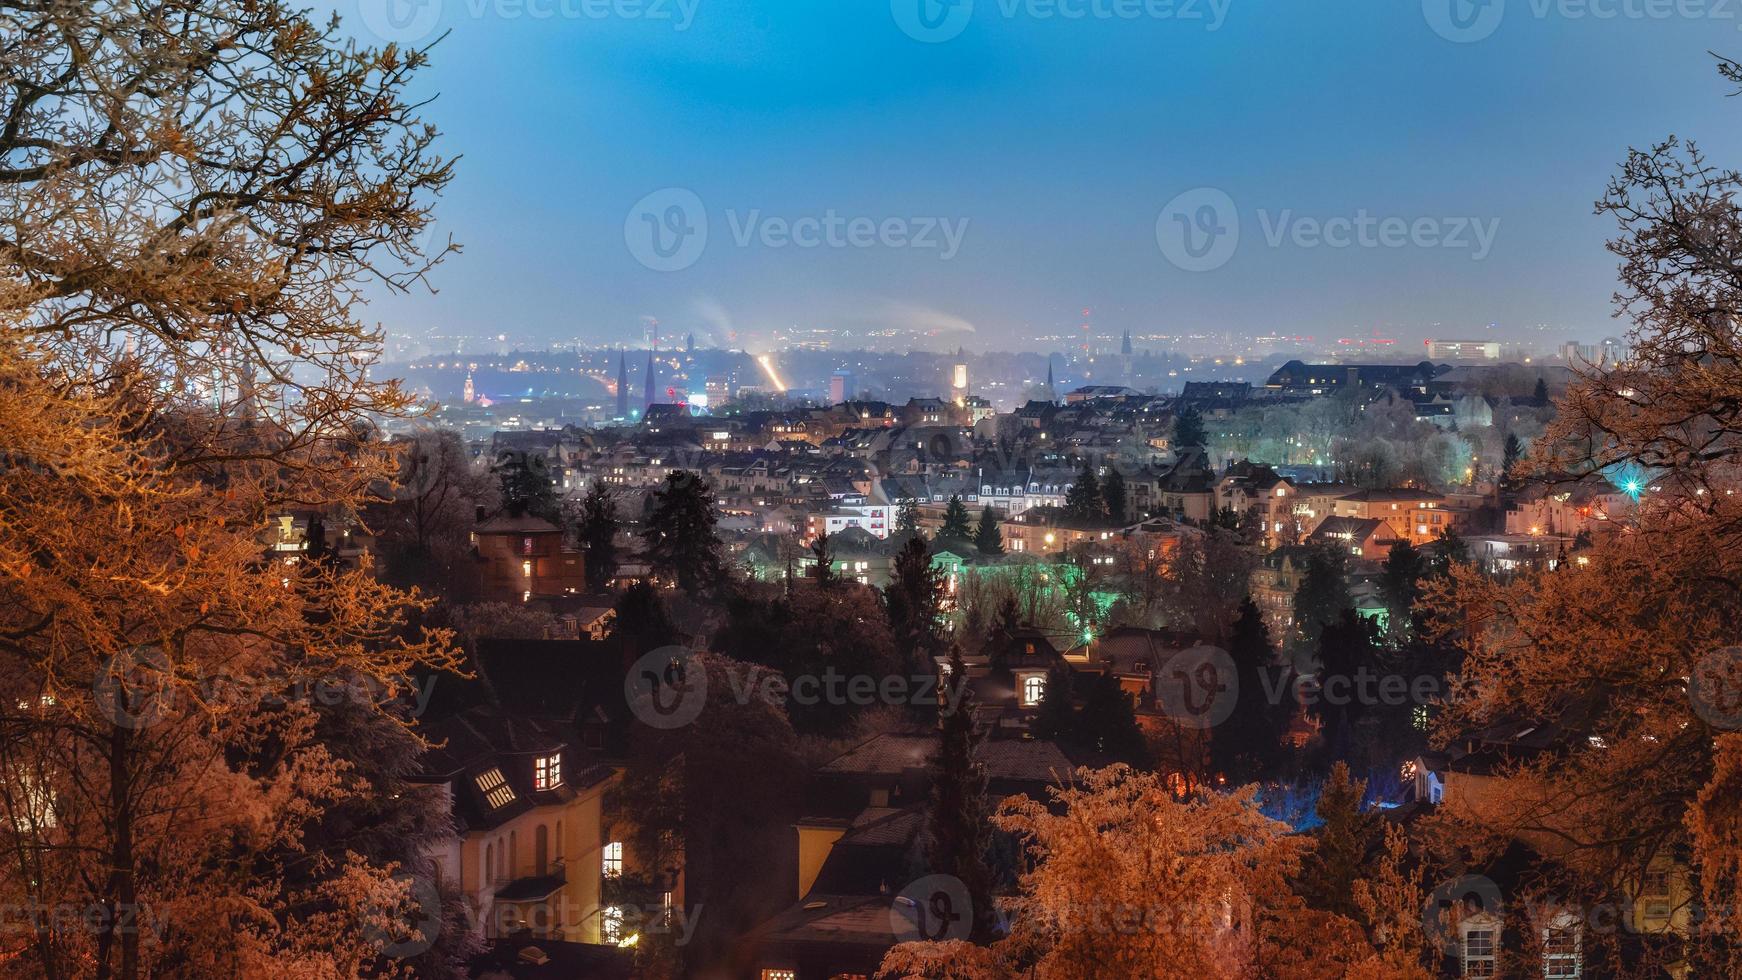 vista dalla collina di Neroberg verso Wiesbaden, Hesse, Germania, Europa, paesaggio urbano notturno. foto